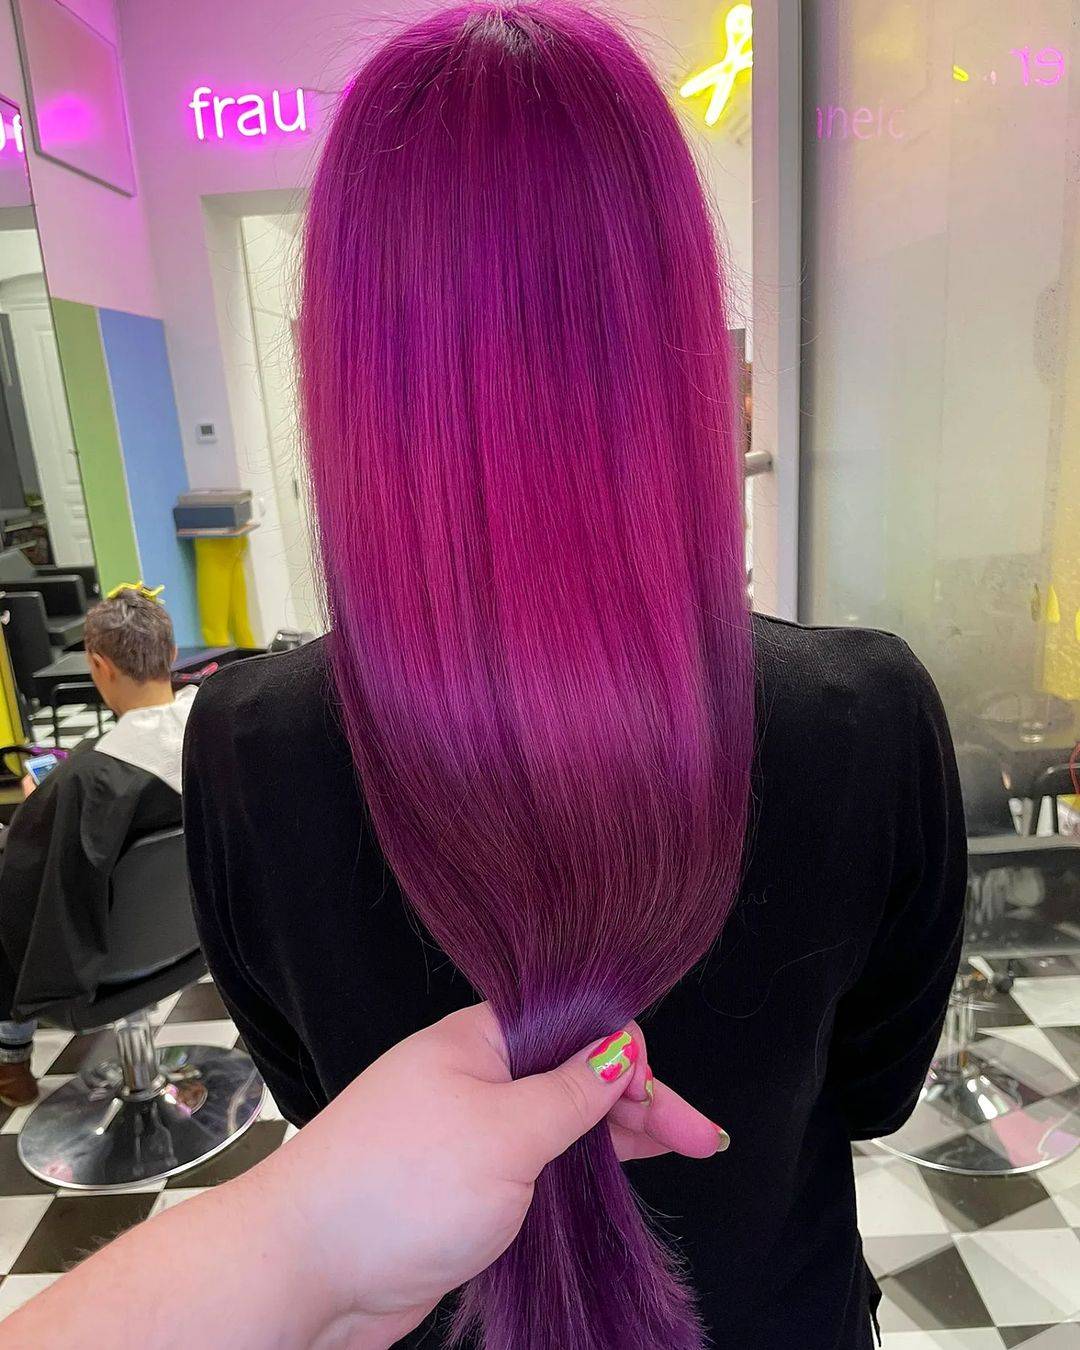 Burgundy hair color 448 burgundy hair color | burgundy hair color for women | burgundy hair color highlights Burgundy Hair Color